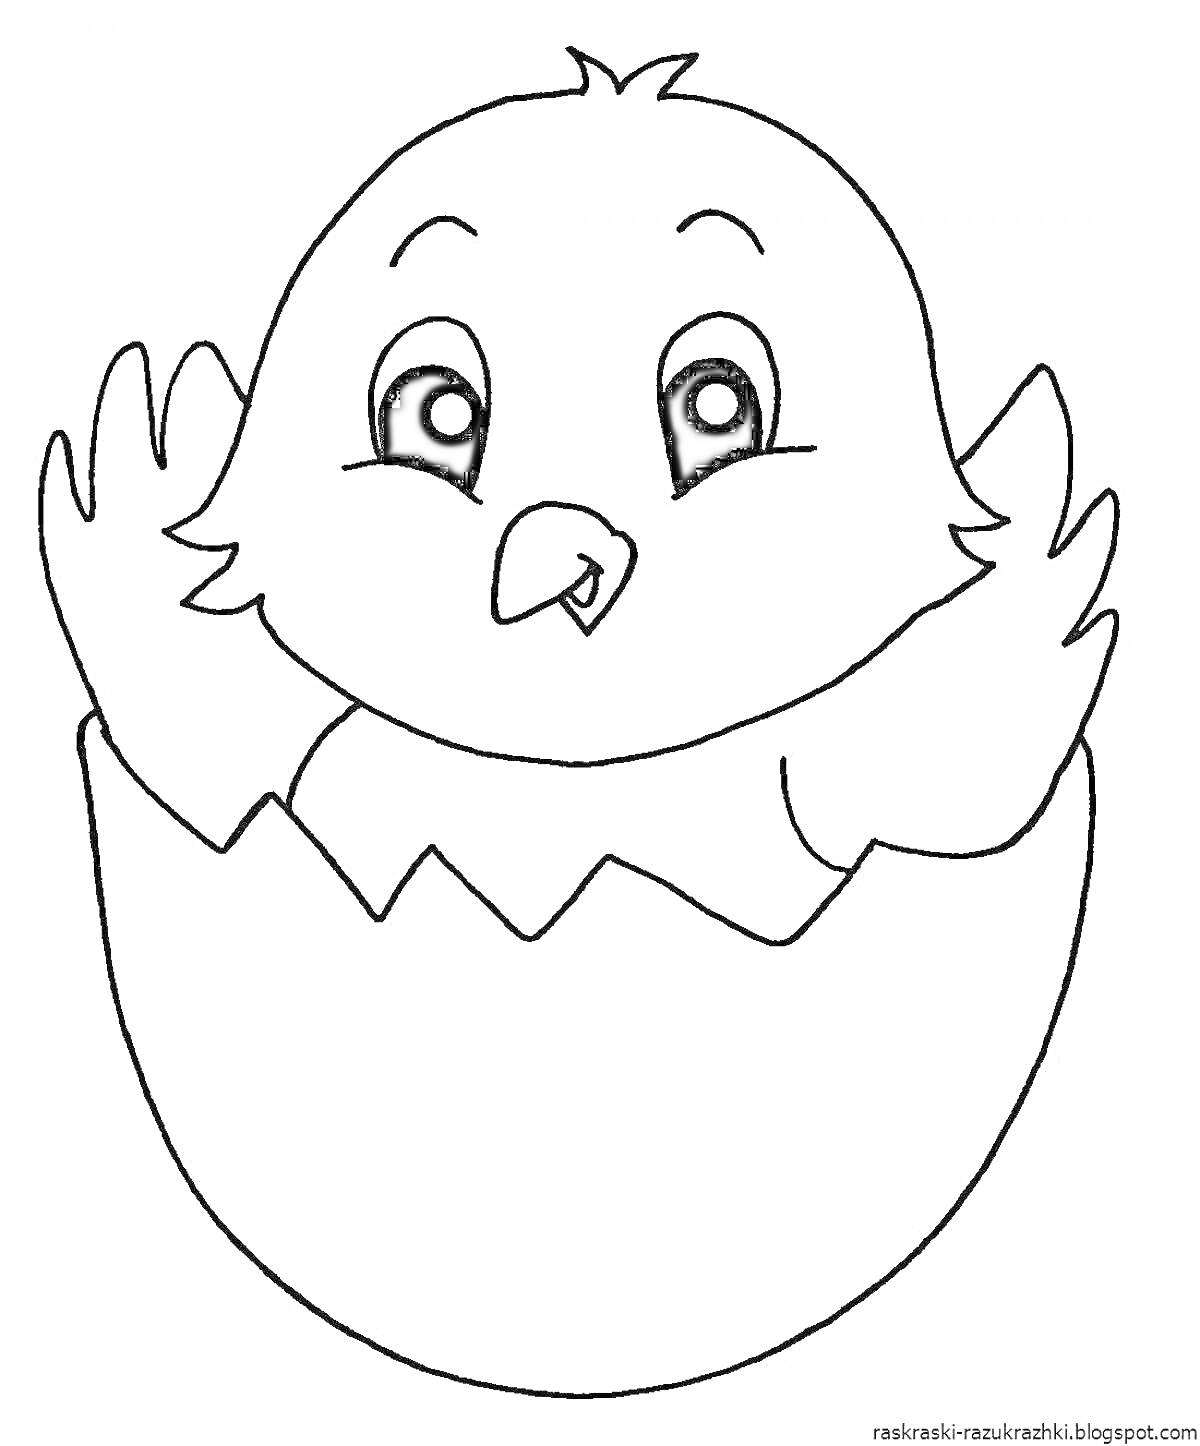 Раскраска Цыпленок в разбитом яйце с растопыренными крылышками и большими глазами